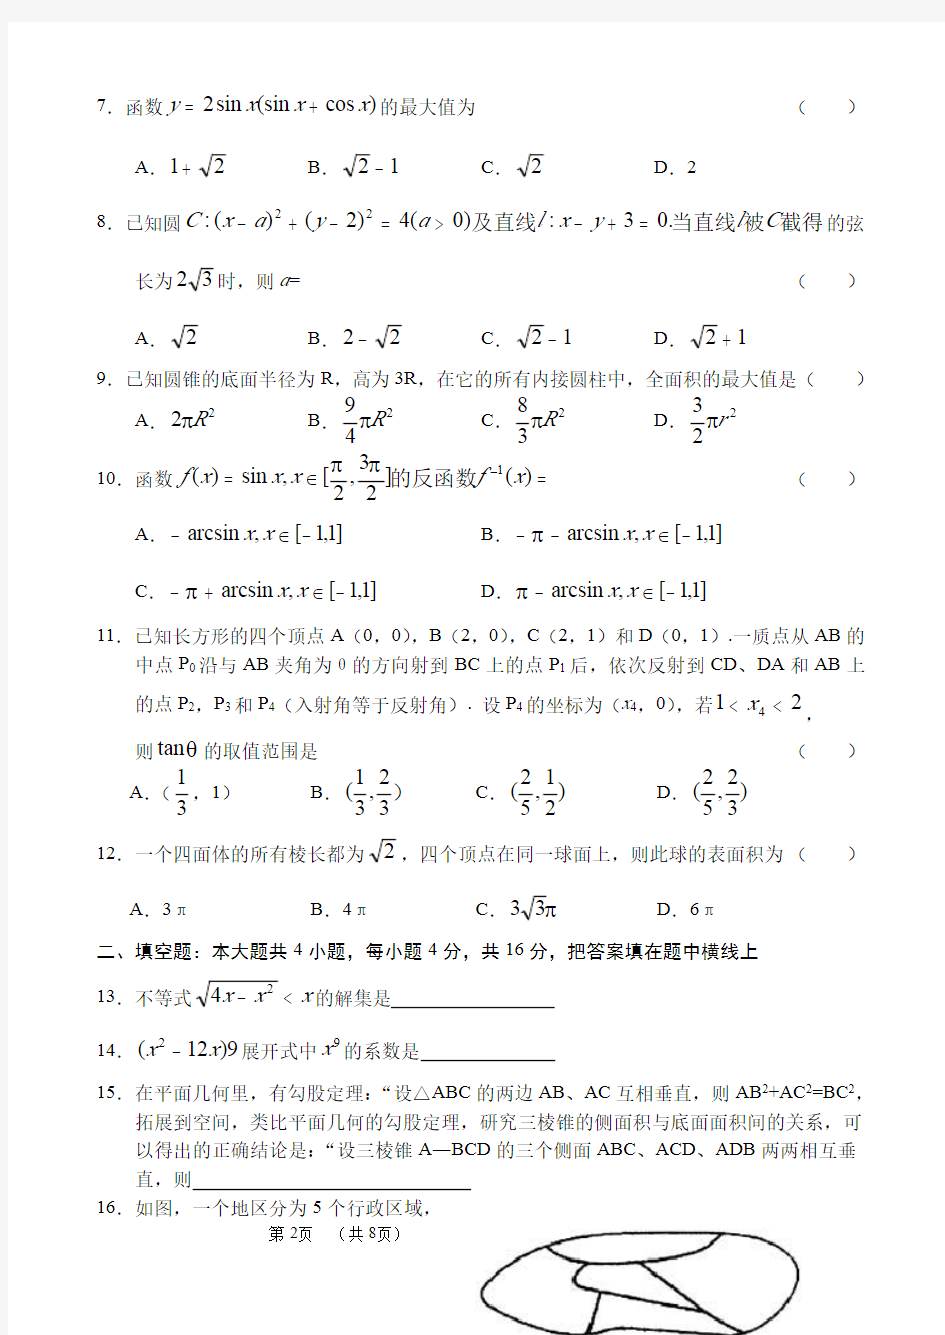 2003年高考.广东卷.数学试题及答案